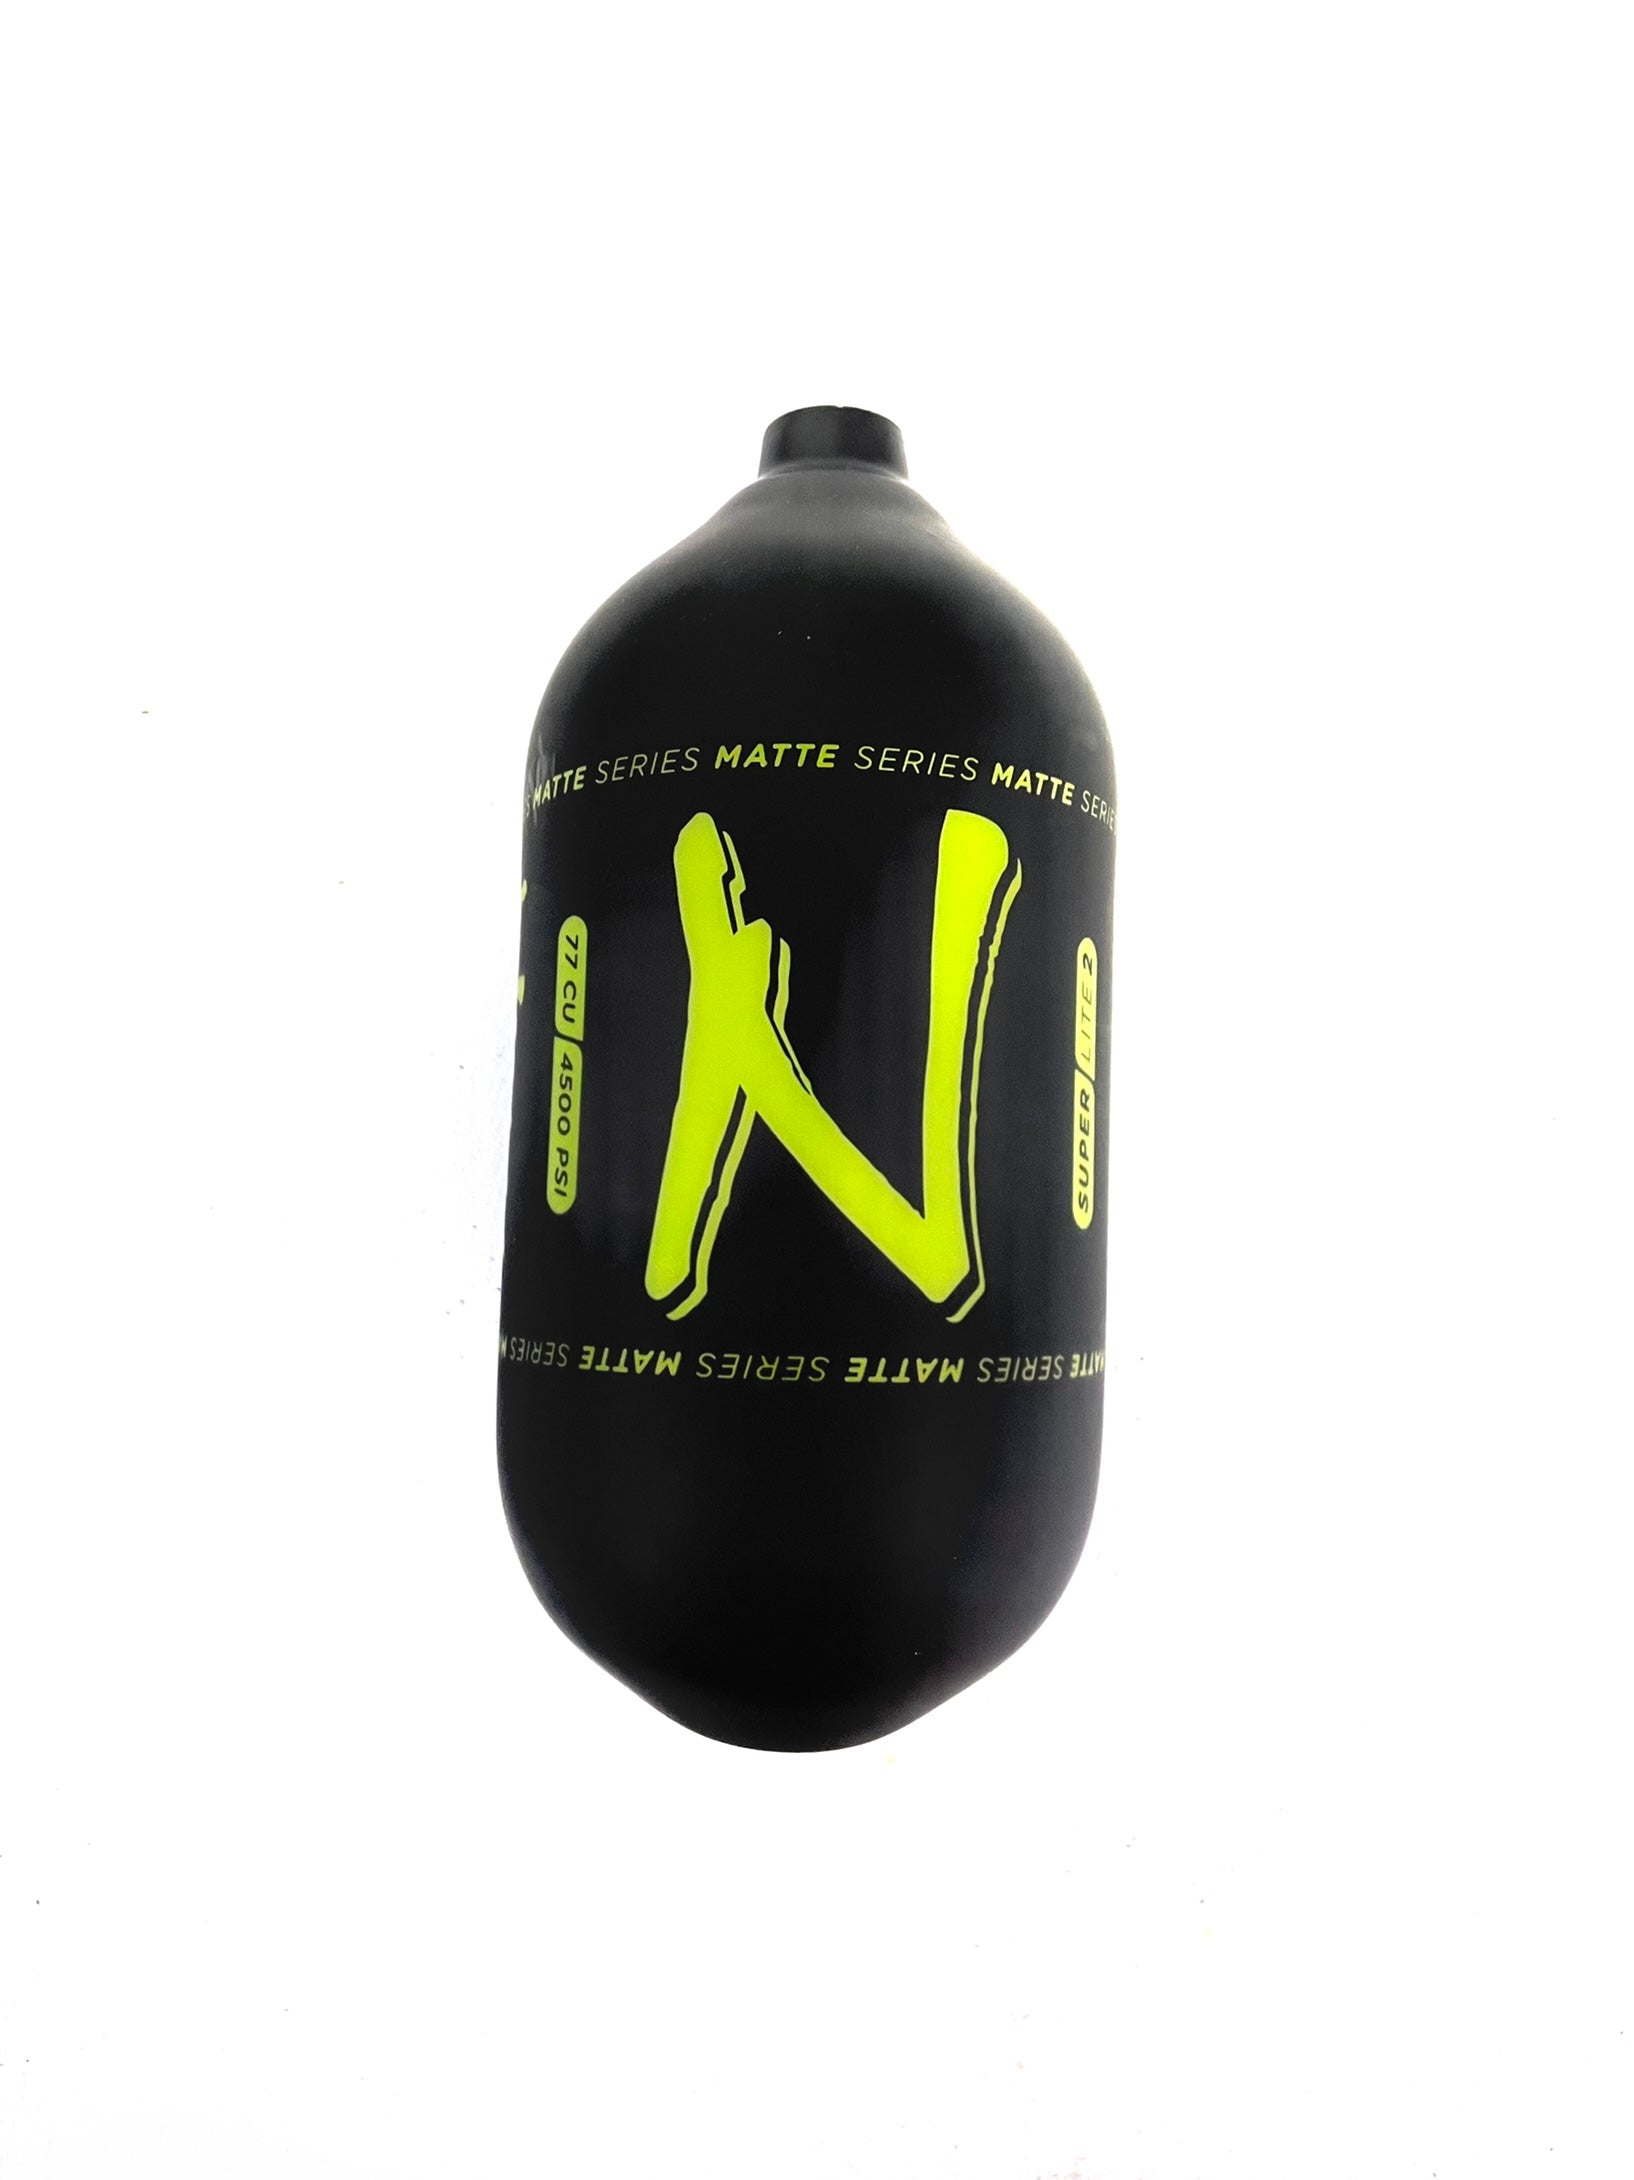 Ninja SL2 77/4500 "Matte Series" Carbon Fiber Paintball Tank BOTTLE ONLY - Black/Lime